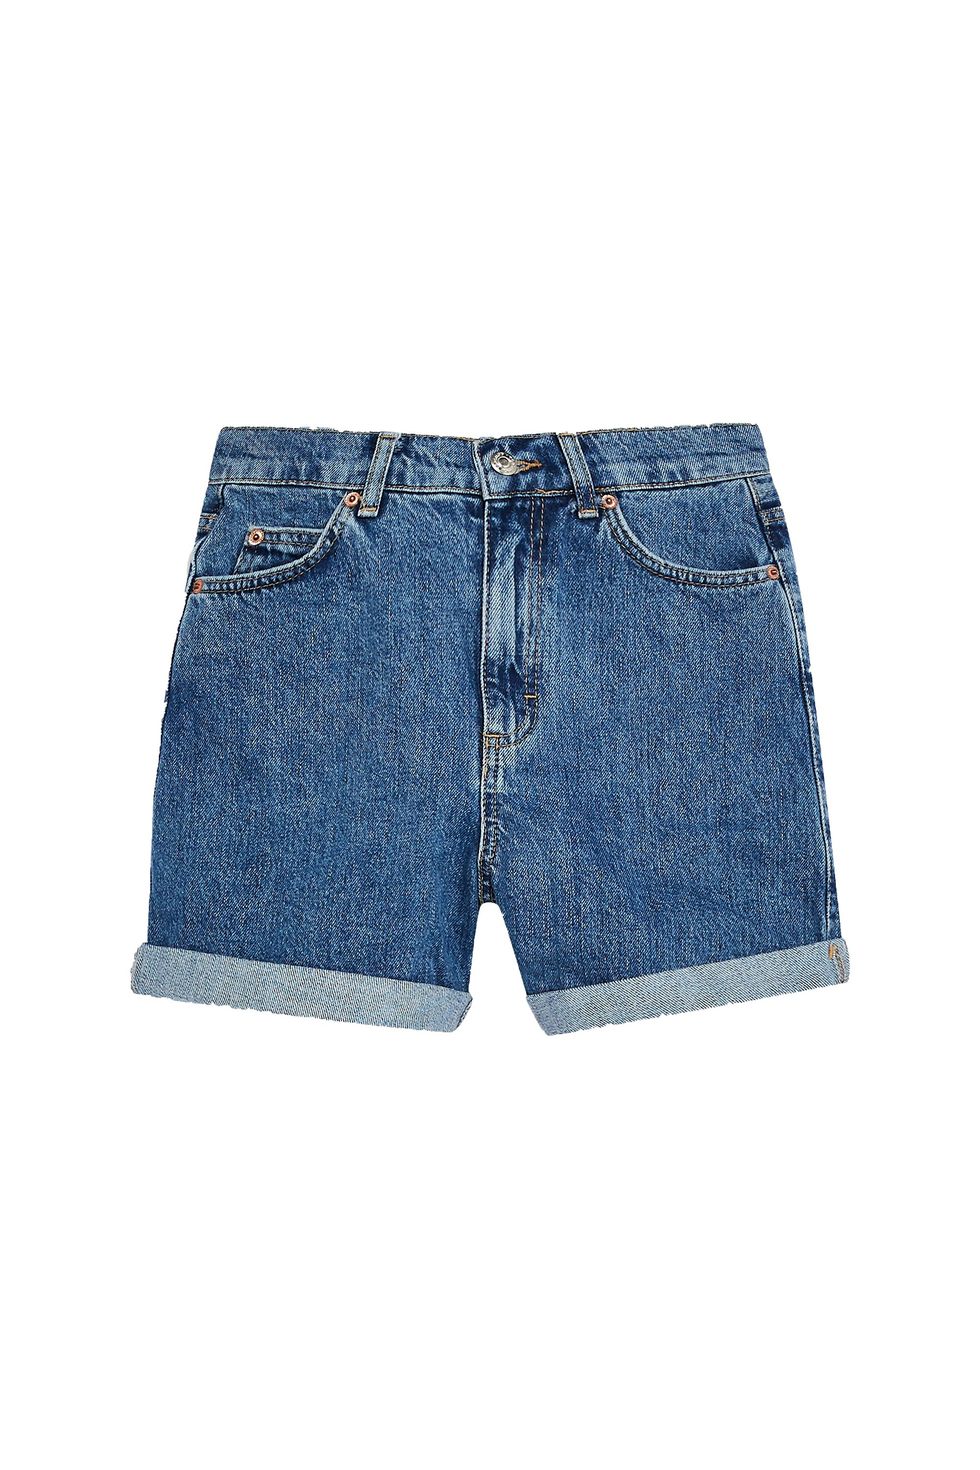 Topshop Petite denim comfort stretch Mom shorts in bleach-Blue